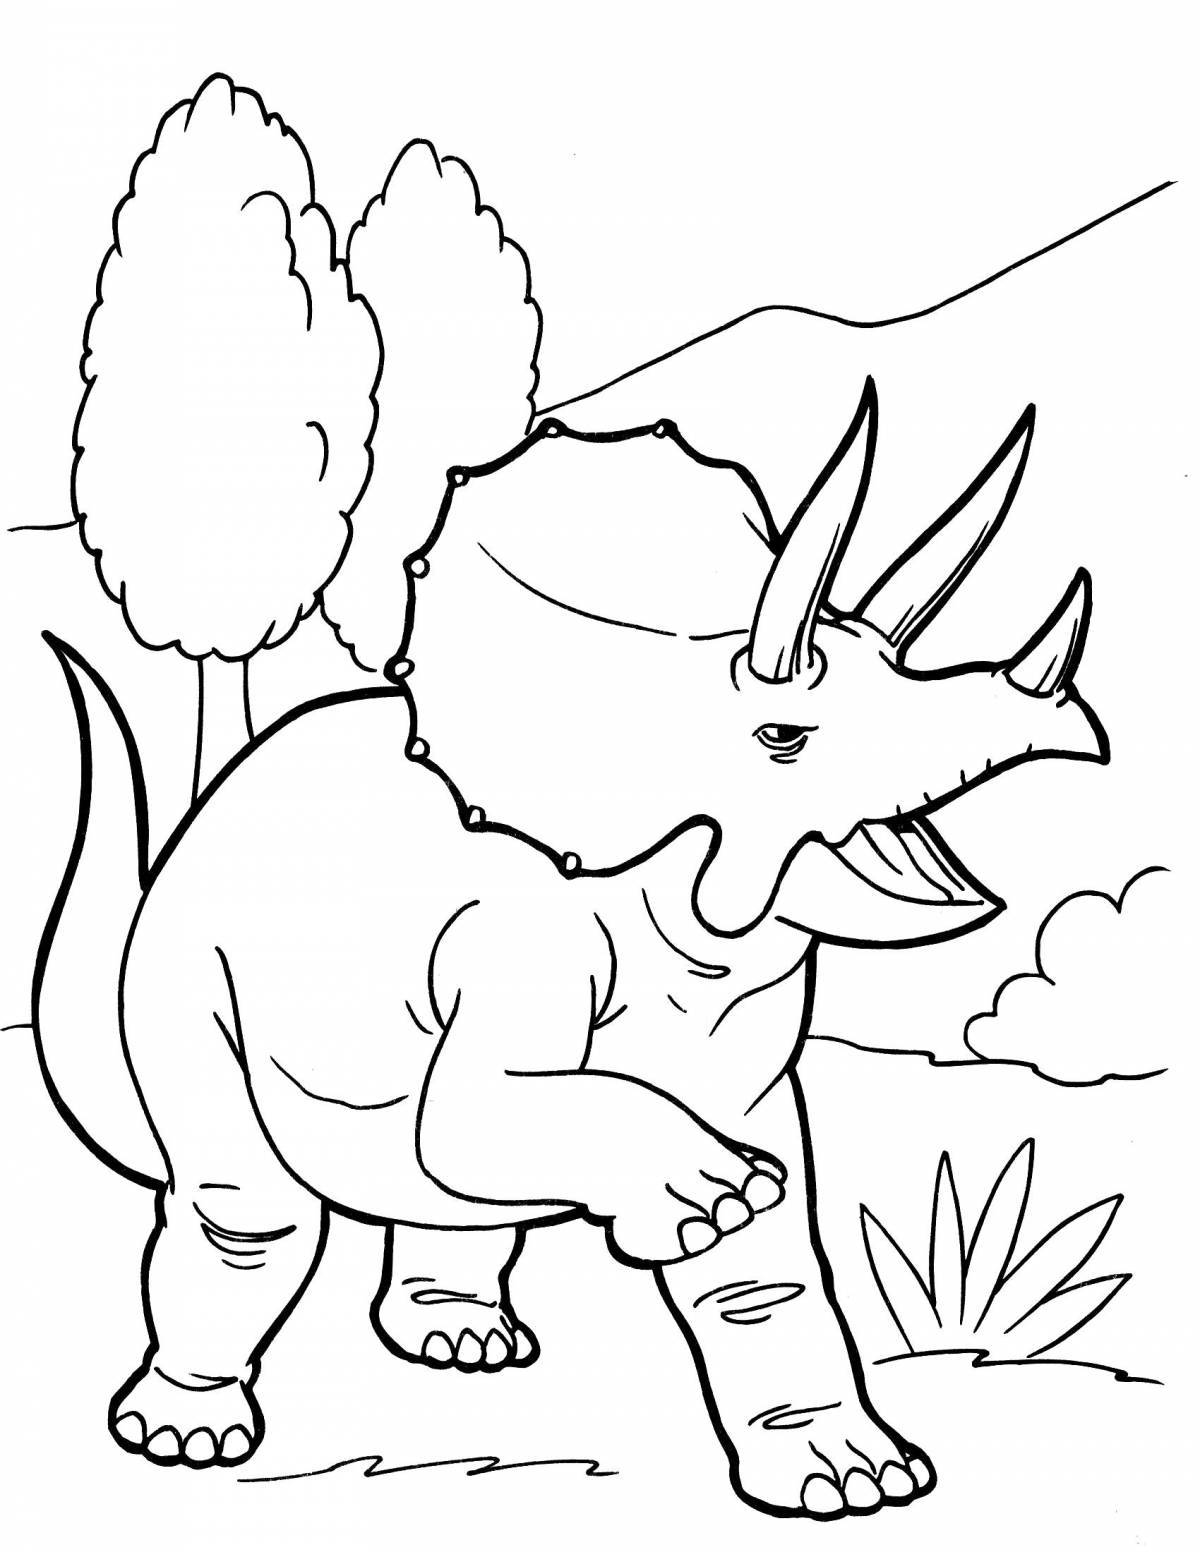 Привлекательная раскраска динозавров для детей